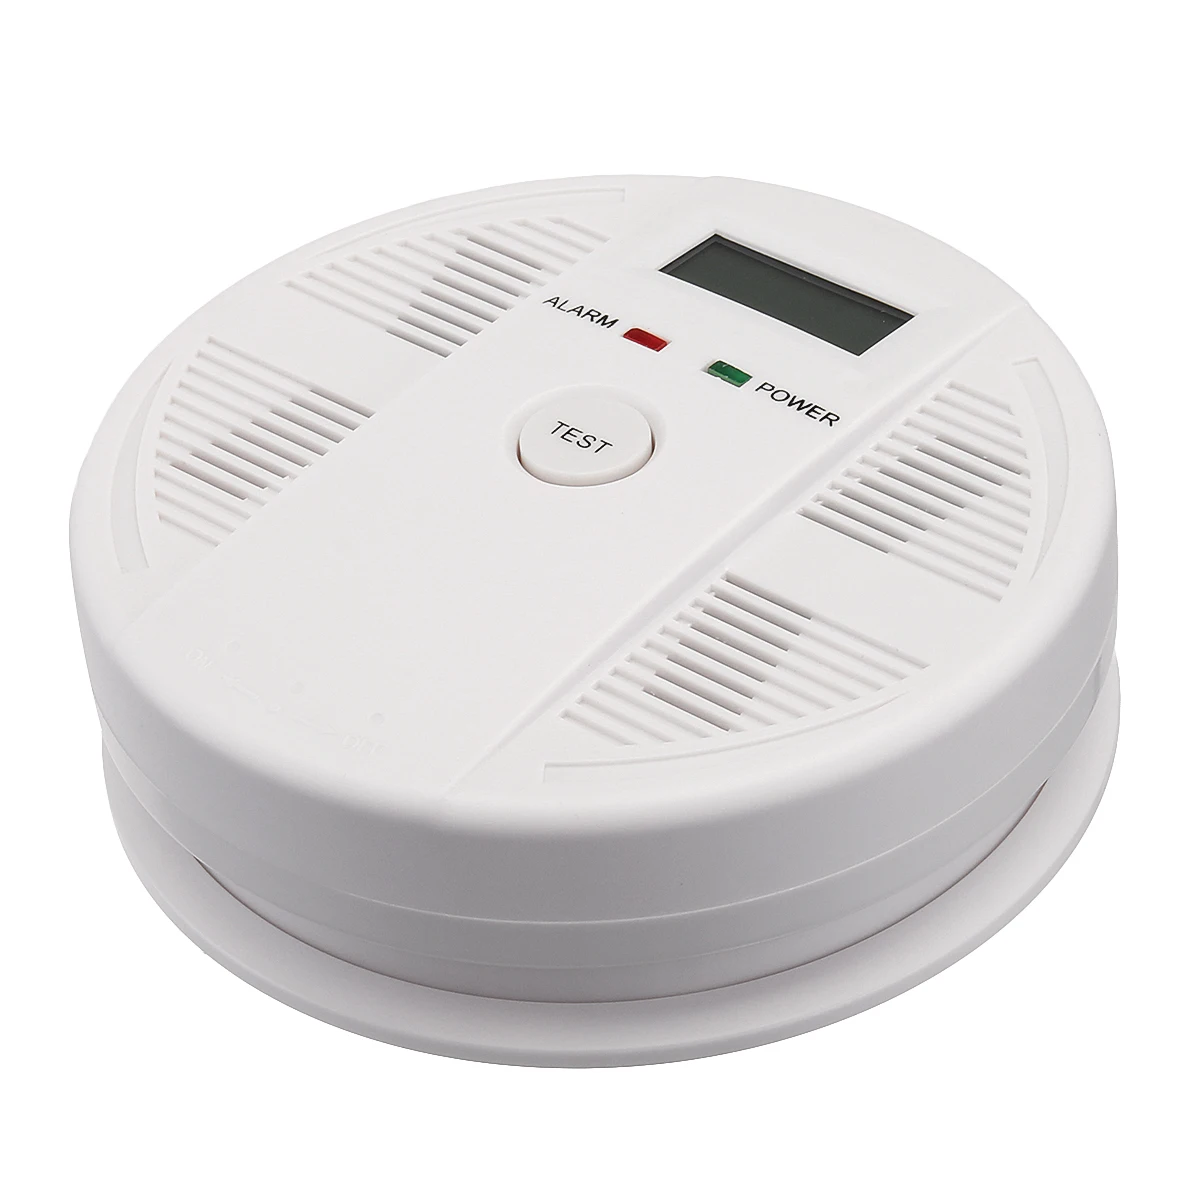 85dB ЖК-дисплей цифровой дым и детектор угарного газа Высокочувствительный угарного газа Сенсор отравления Предупреждение сигнализации для безопасности дома